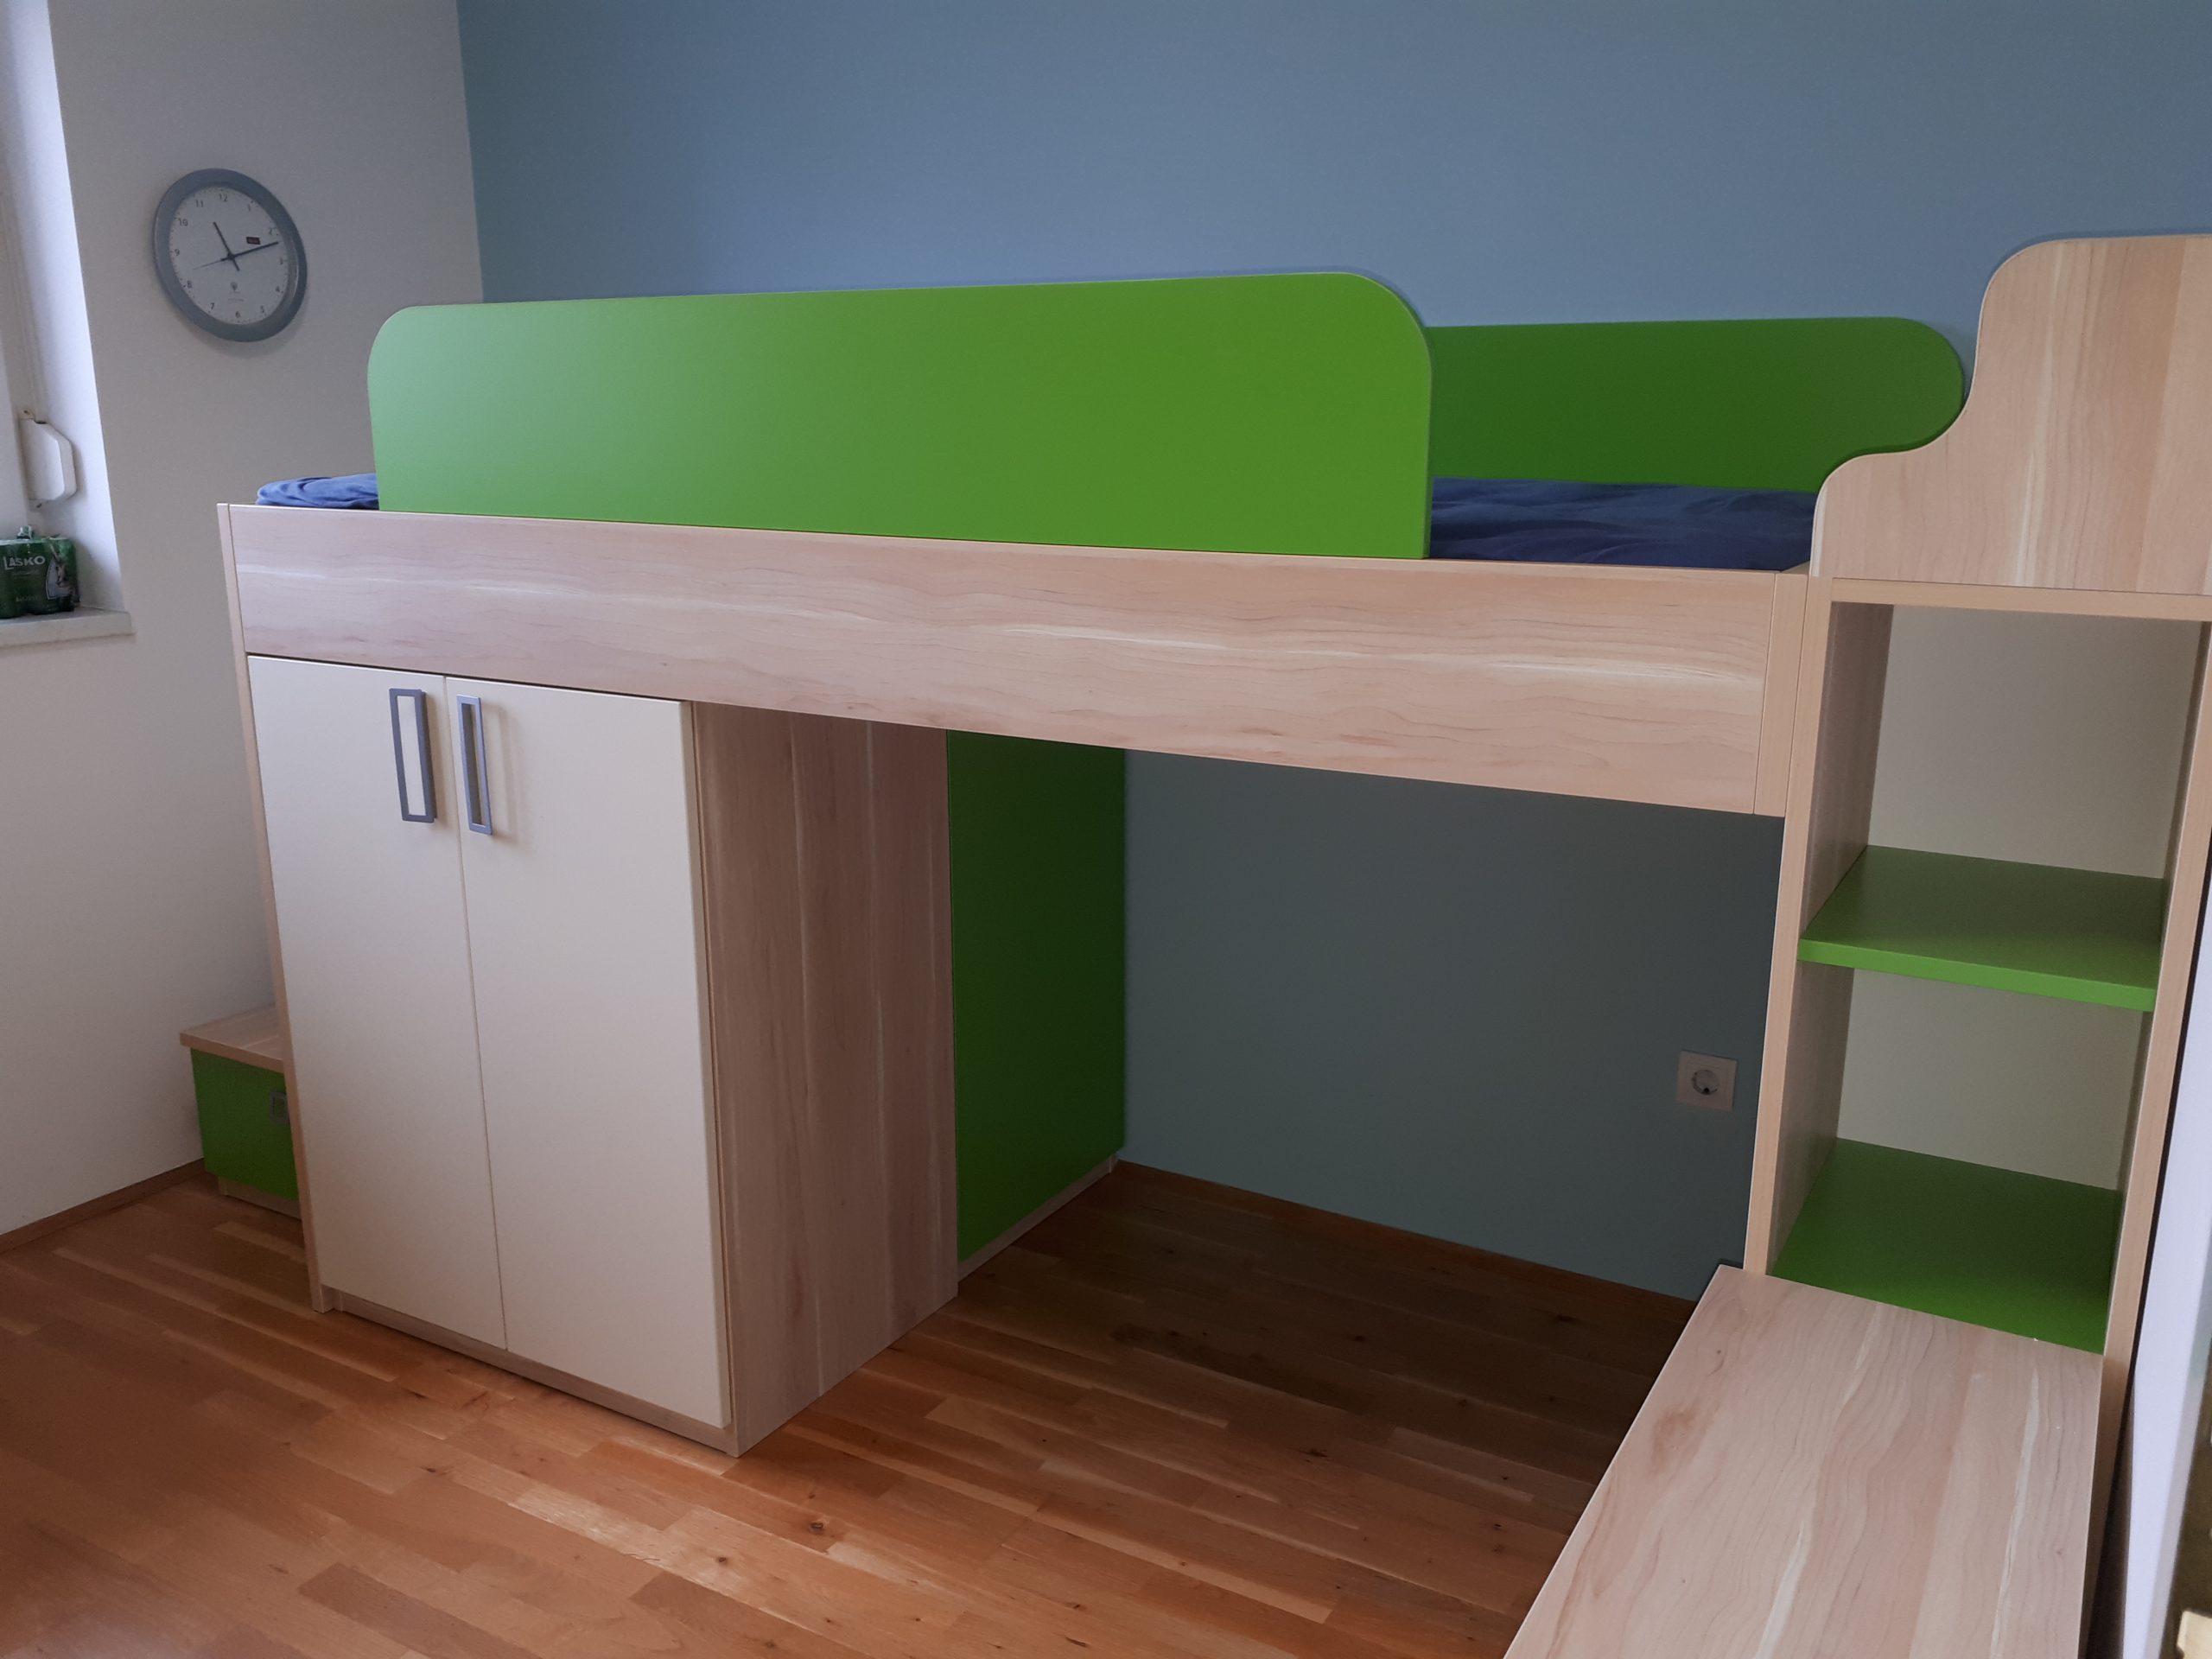 Pohištvo za otroško sobo v zelenih tonih izdelano v oddelku mizarska delavnica Želva.